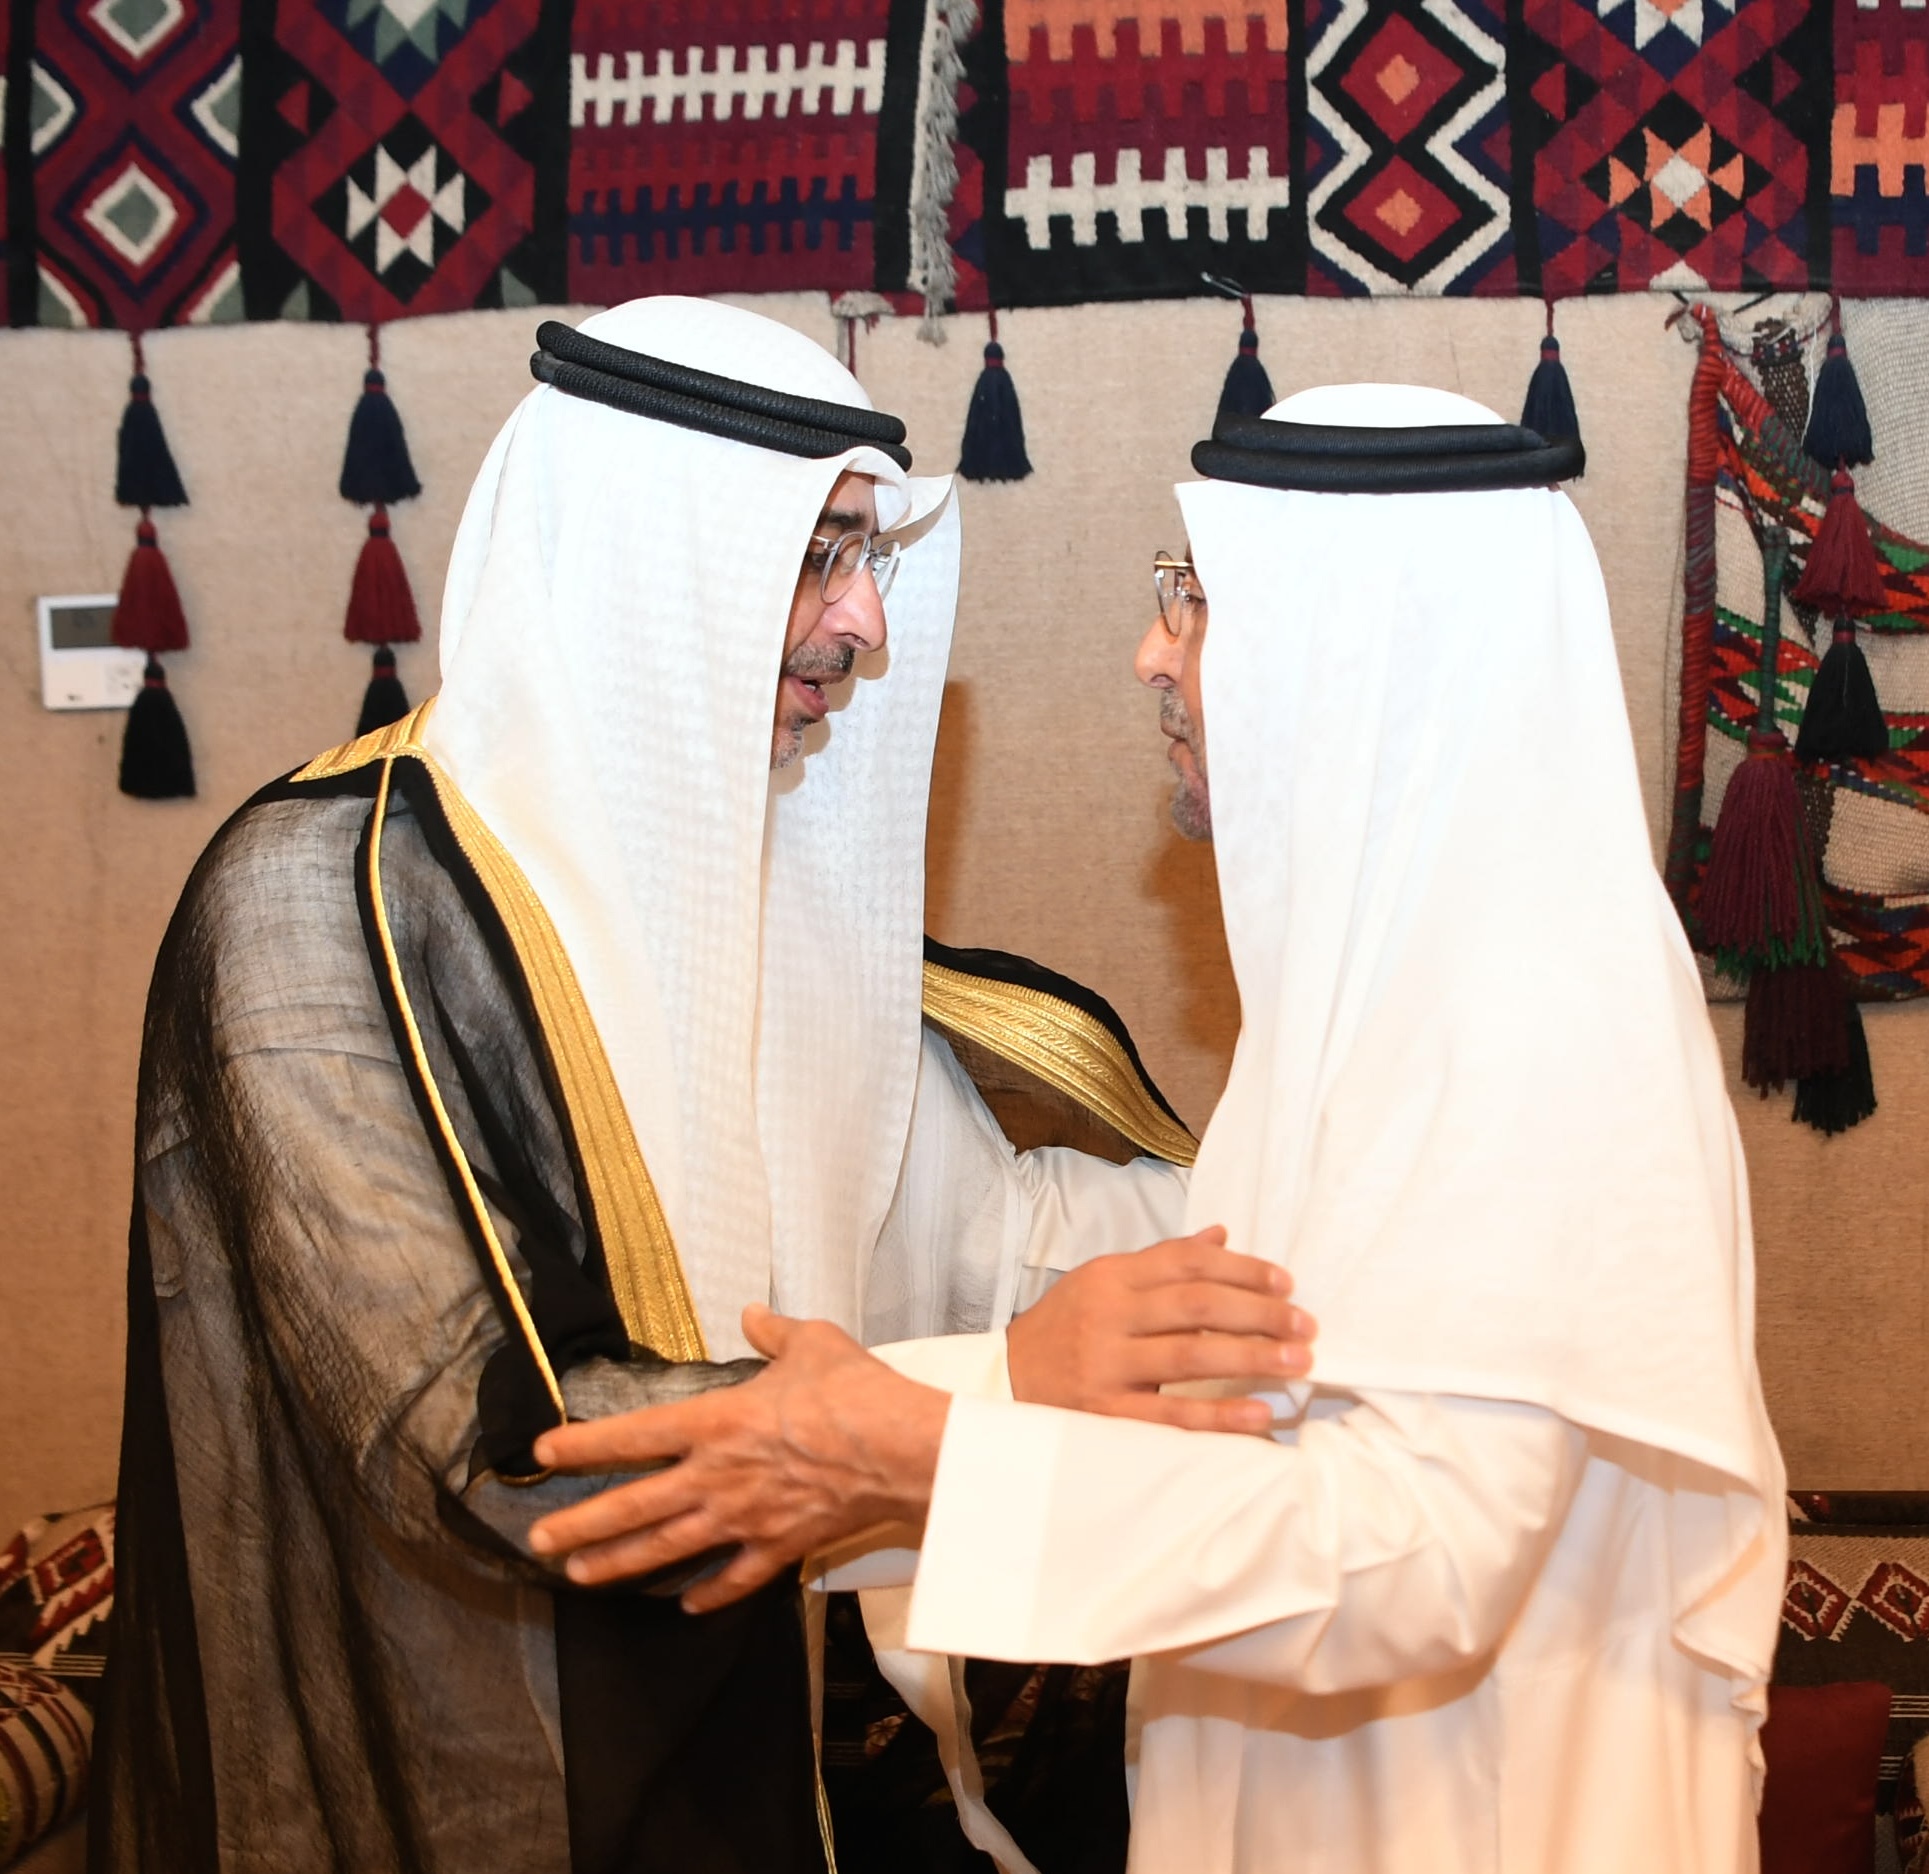 ممثل حضرة صاحب السمو أمير البلاد يقدم واجب العزاء إلى أسرة الأمير بدر بن عبدالمحسن بالرياض